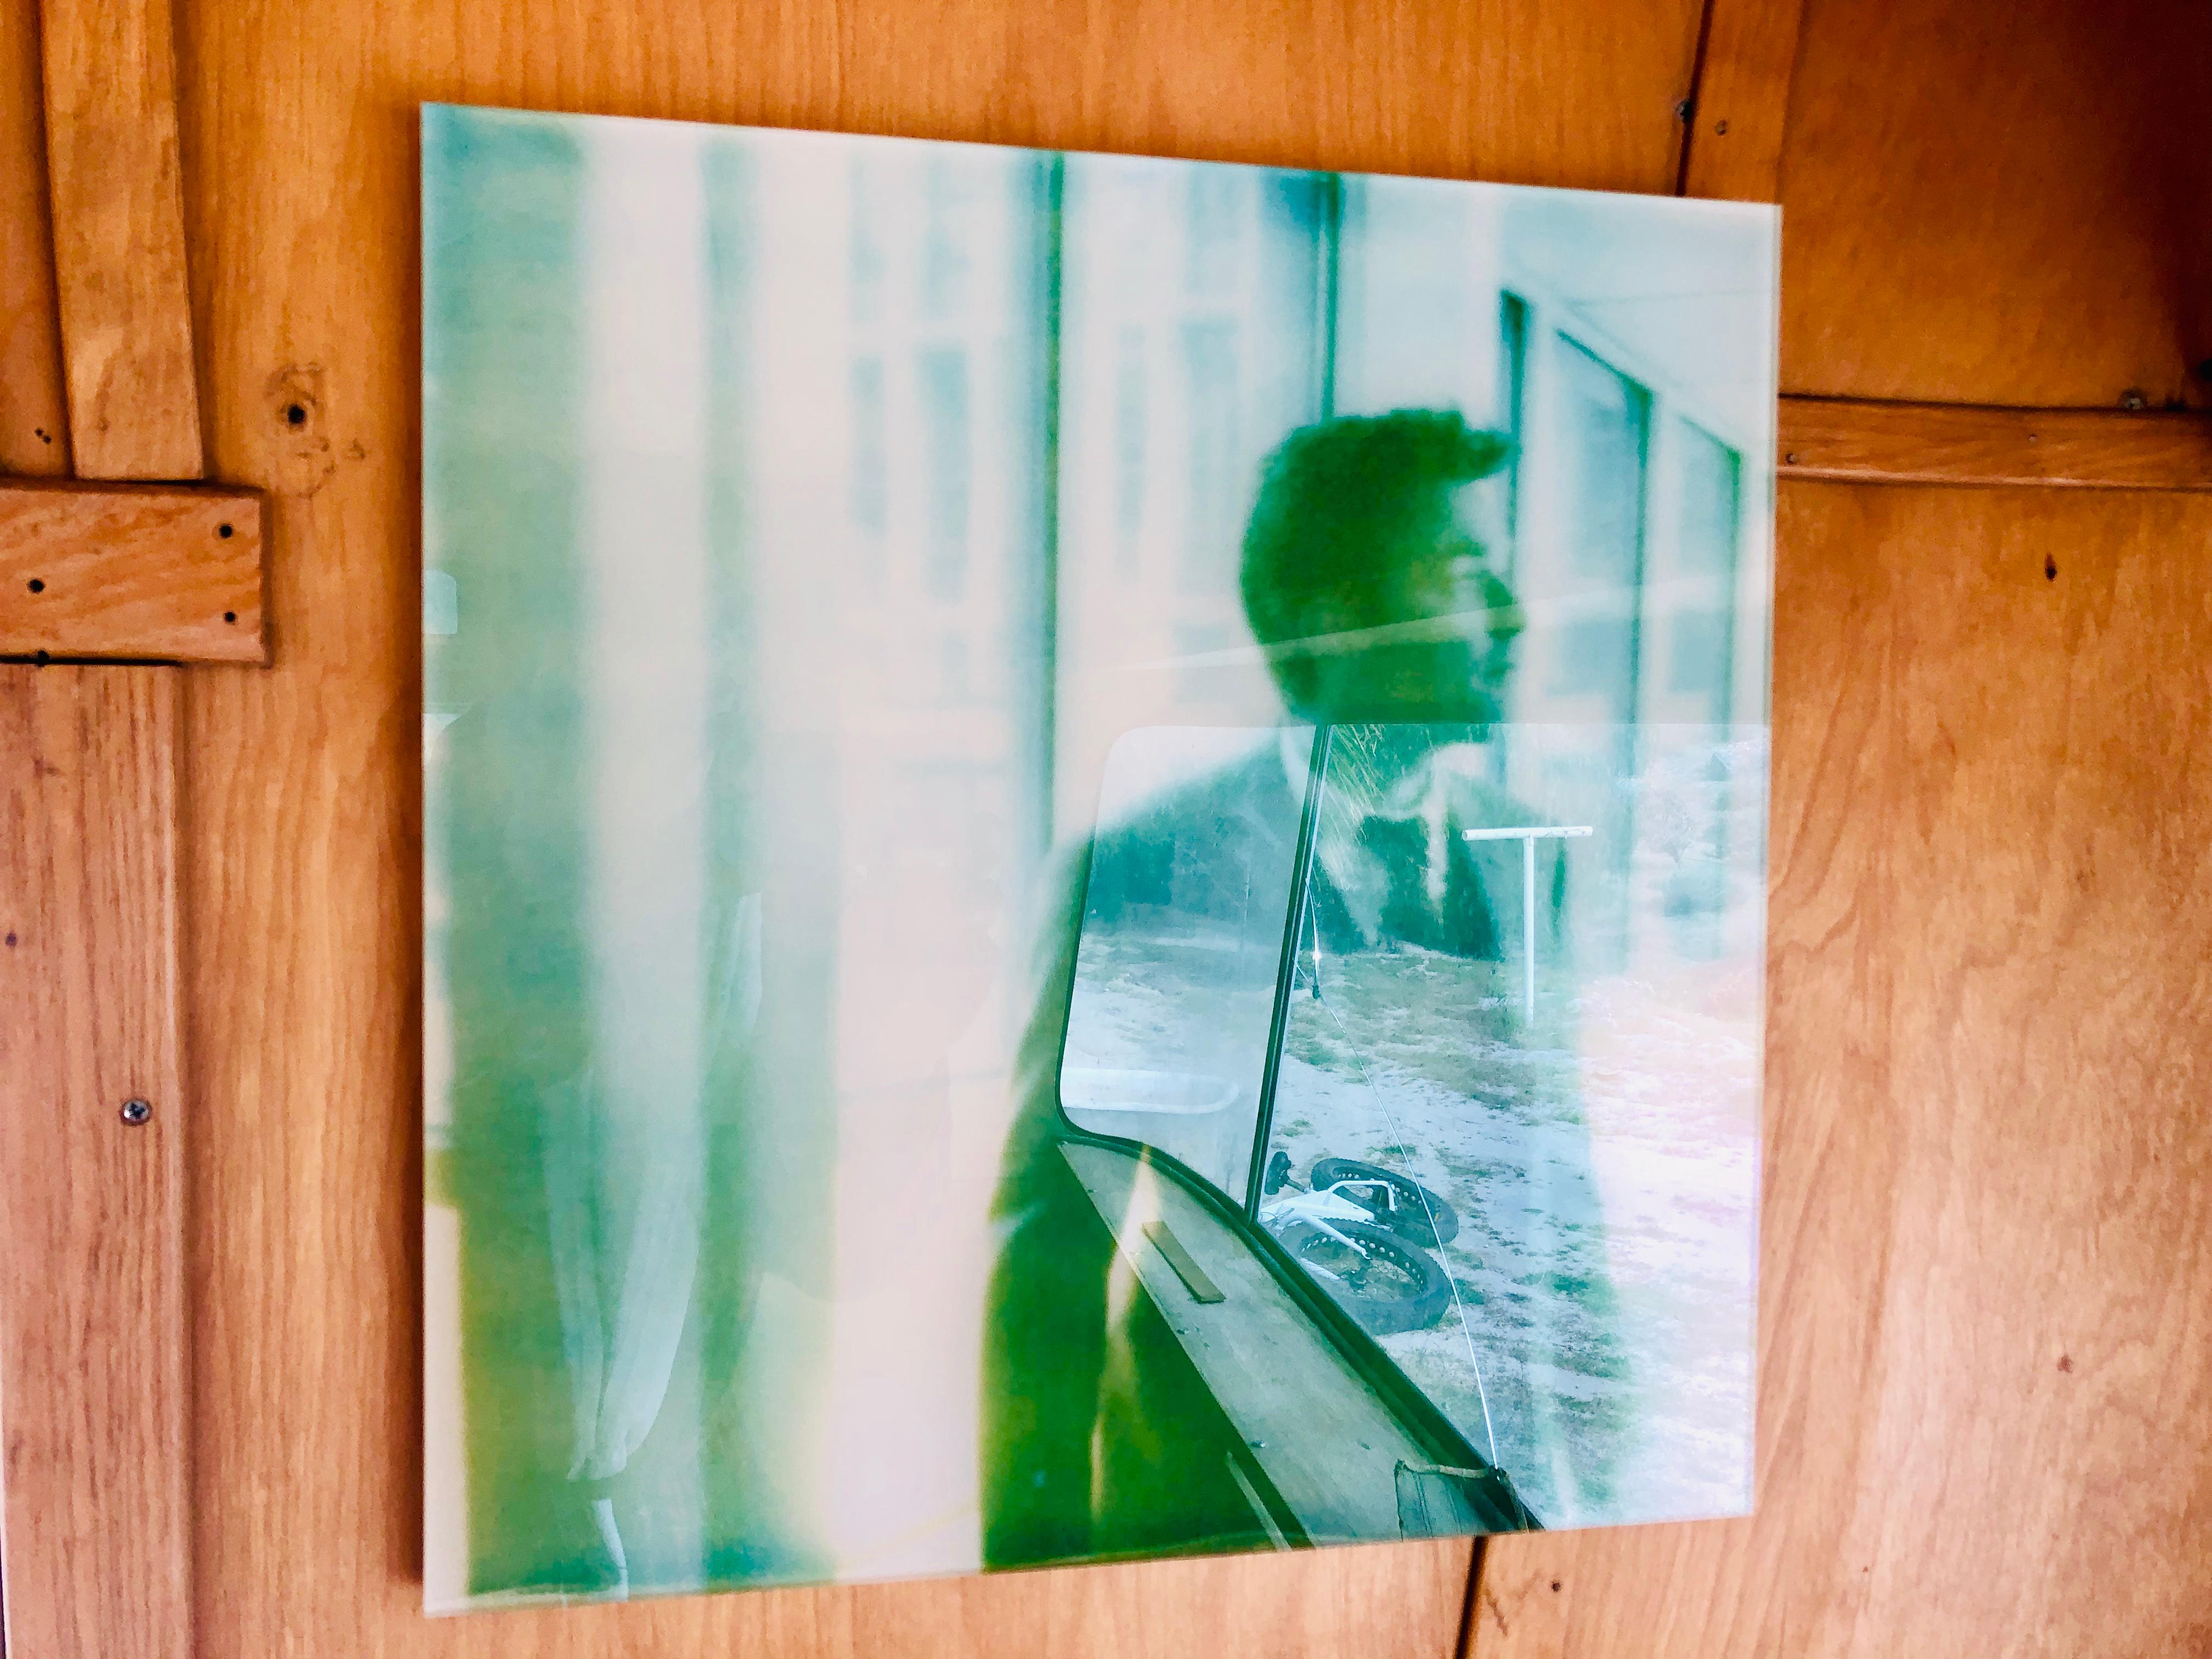 Sam, Interior Hospital - mit Ewan McGregor, Contemporary, Polaroid – Photograph von Stefanie Schneider